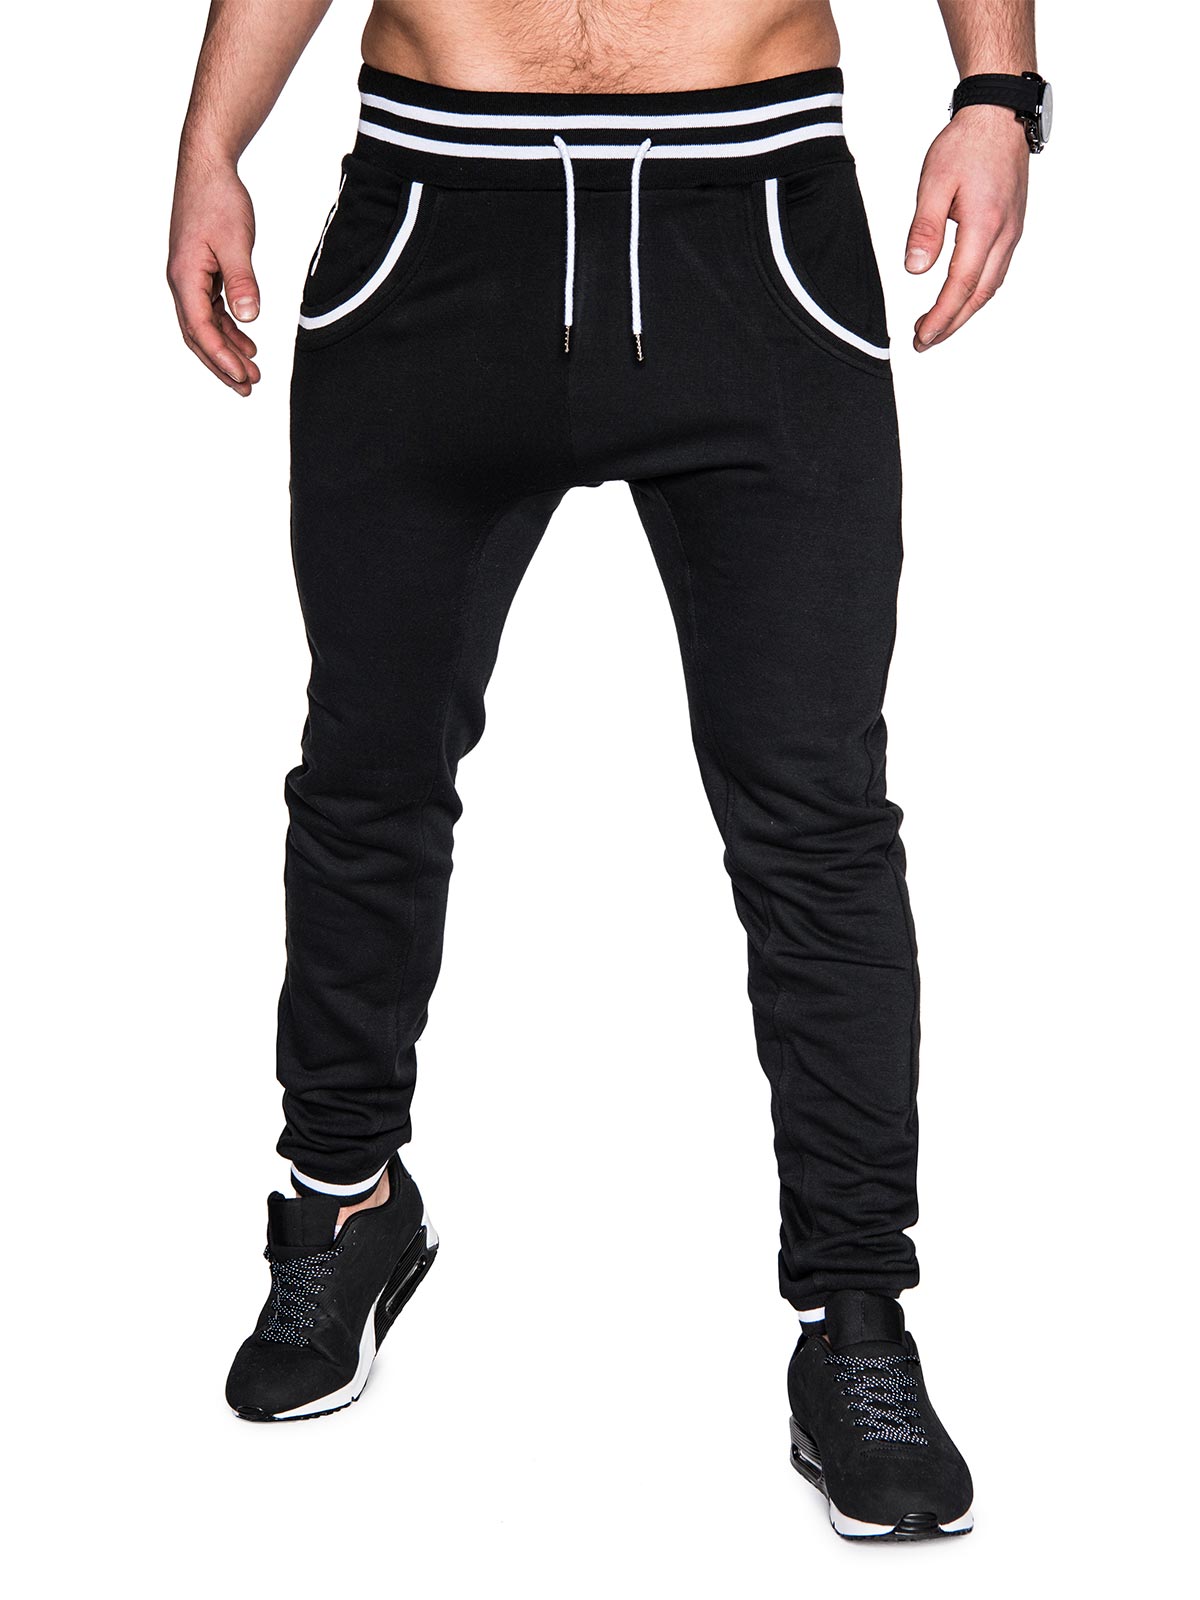 Men's sweatpants P428 - black | MODONE wholesale - Clothing For Men